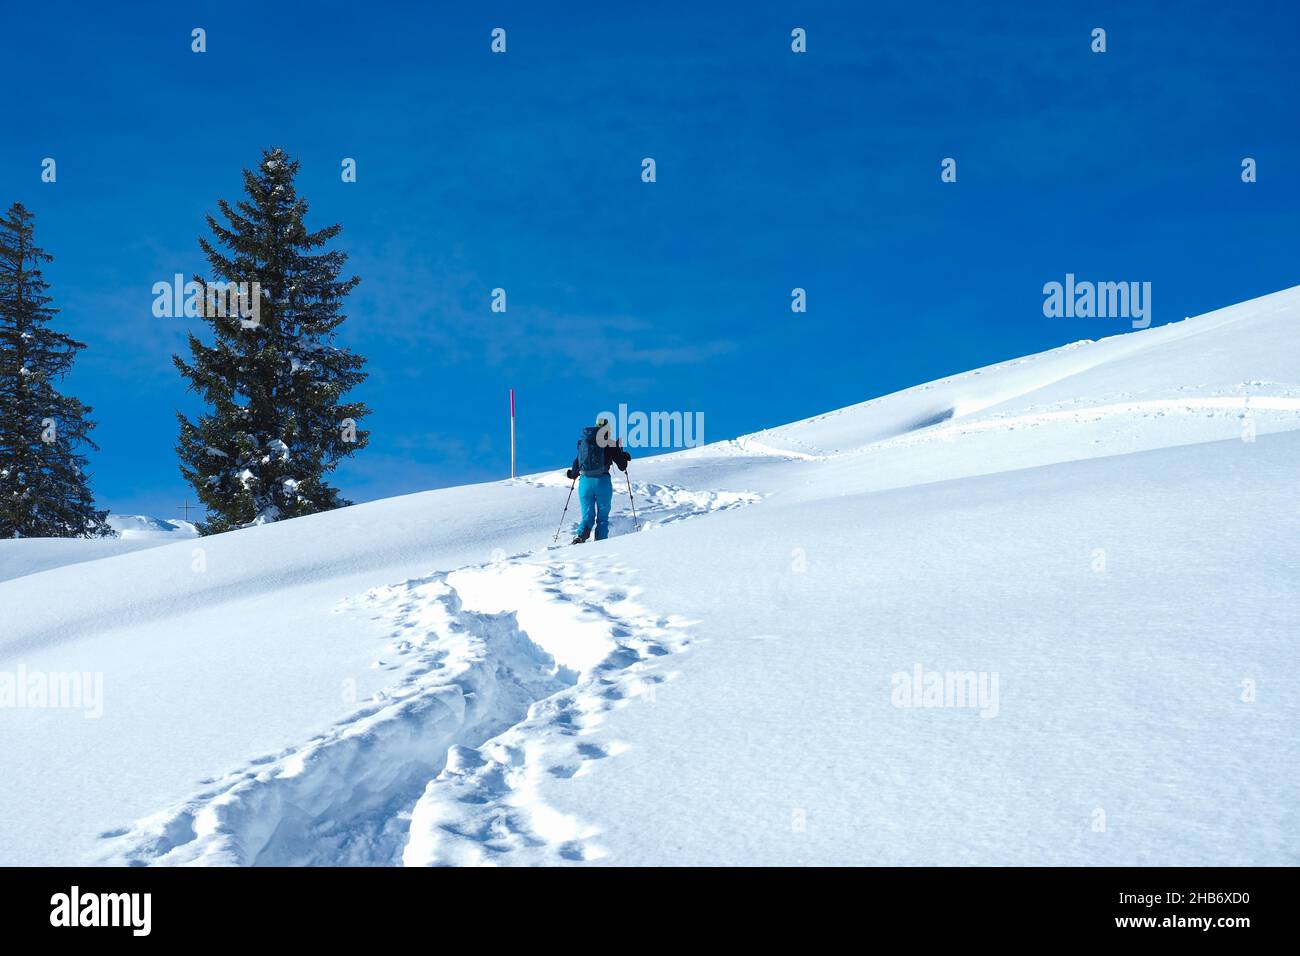 Bella situazione nelle Alpi della Svizzera centrale. Un tourer con racchette da neve che sale su una collina coperta di neve sotto il cielo blu. Foto Stock